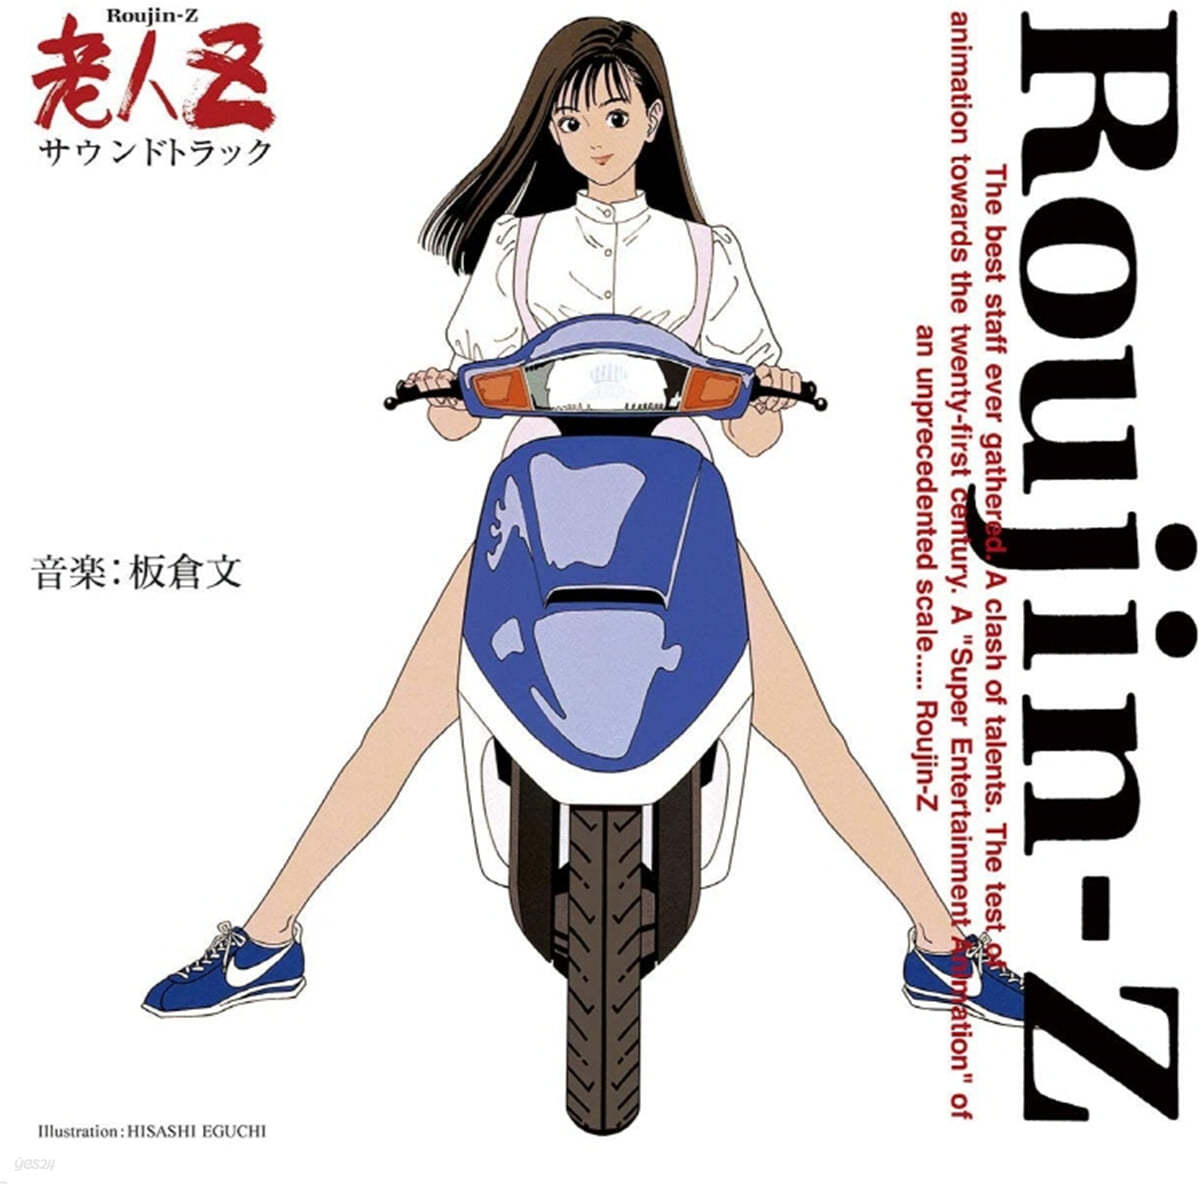 노인 Z 애니메이션 영화음악 (Roujin Z OST by Itakura Bun) [투명 레드 컬러 LP] 